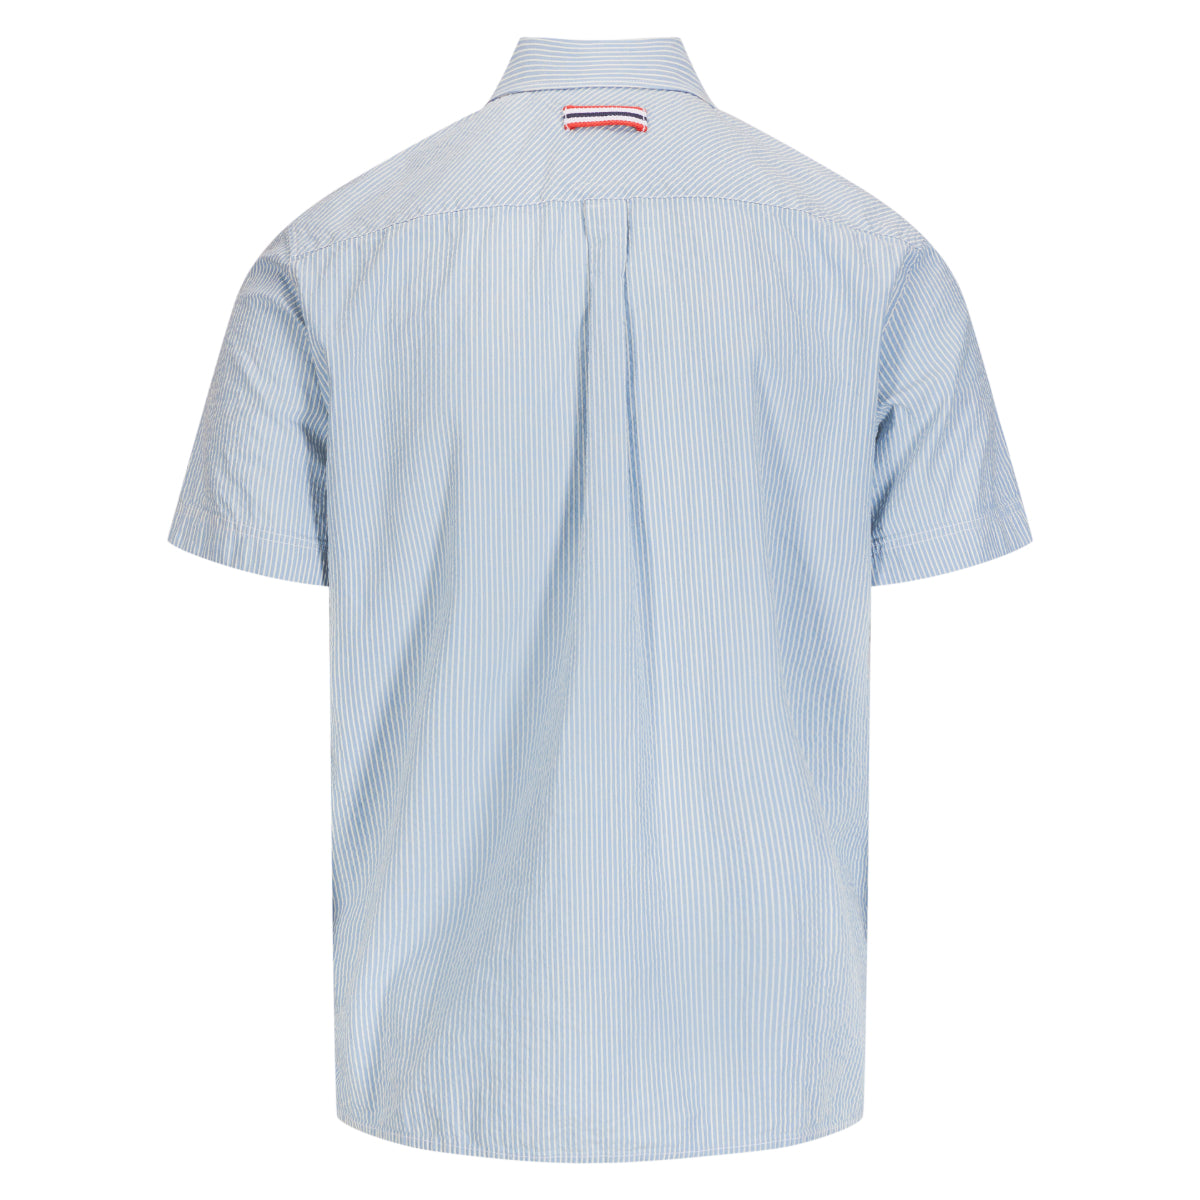 Amundsen Sports - Men's Beach Shirt - Pinstripe Blue